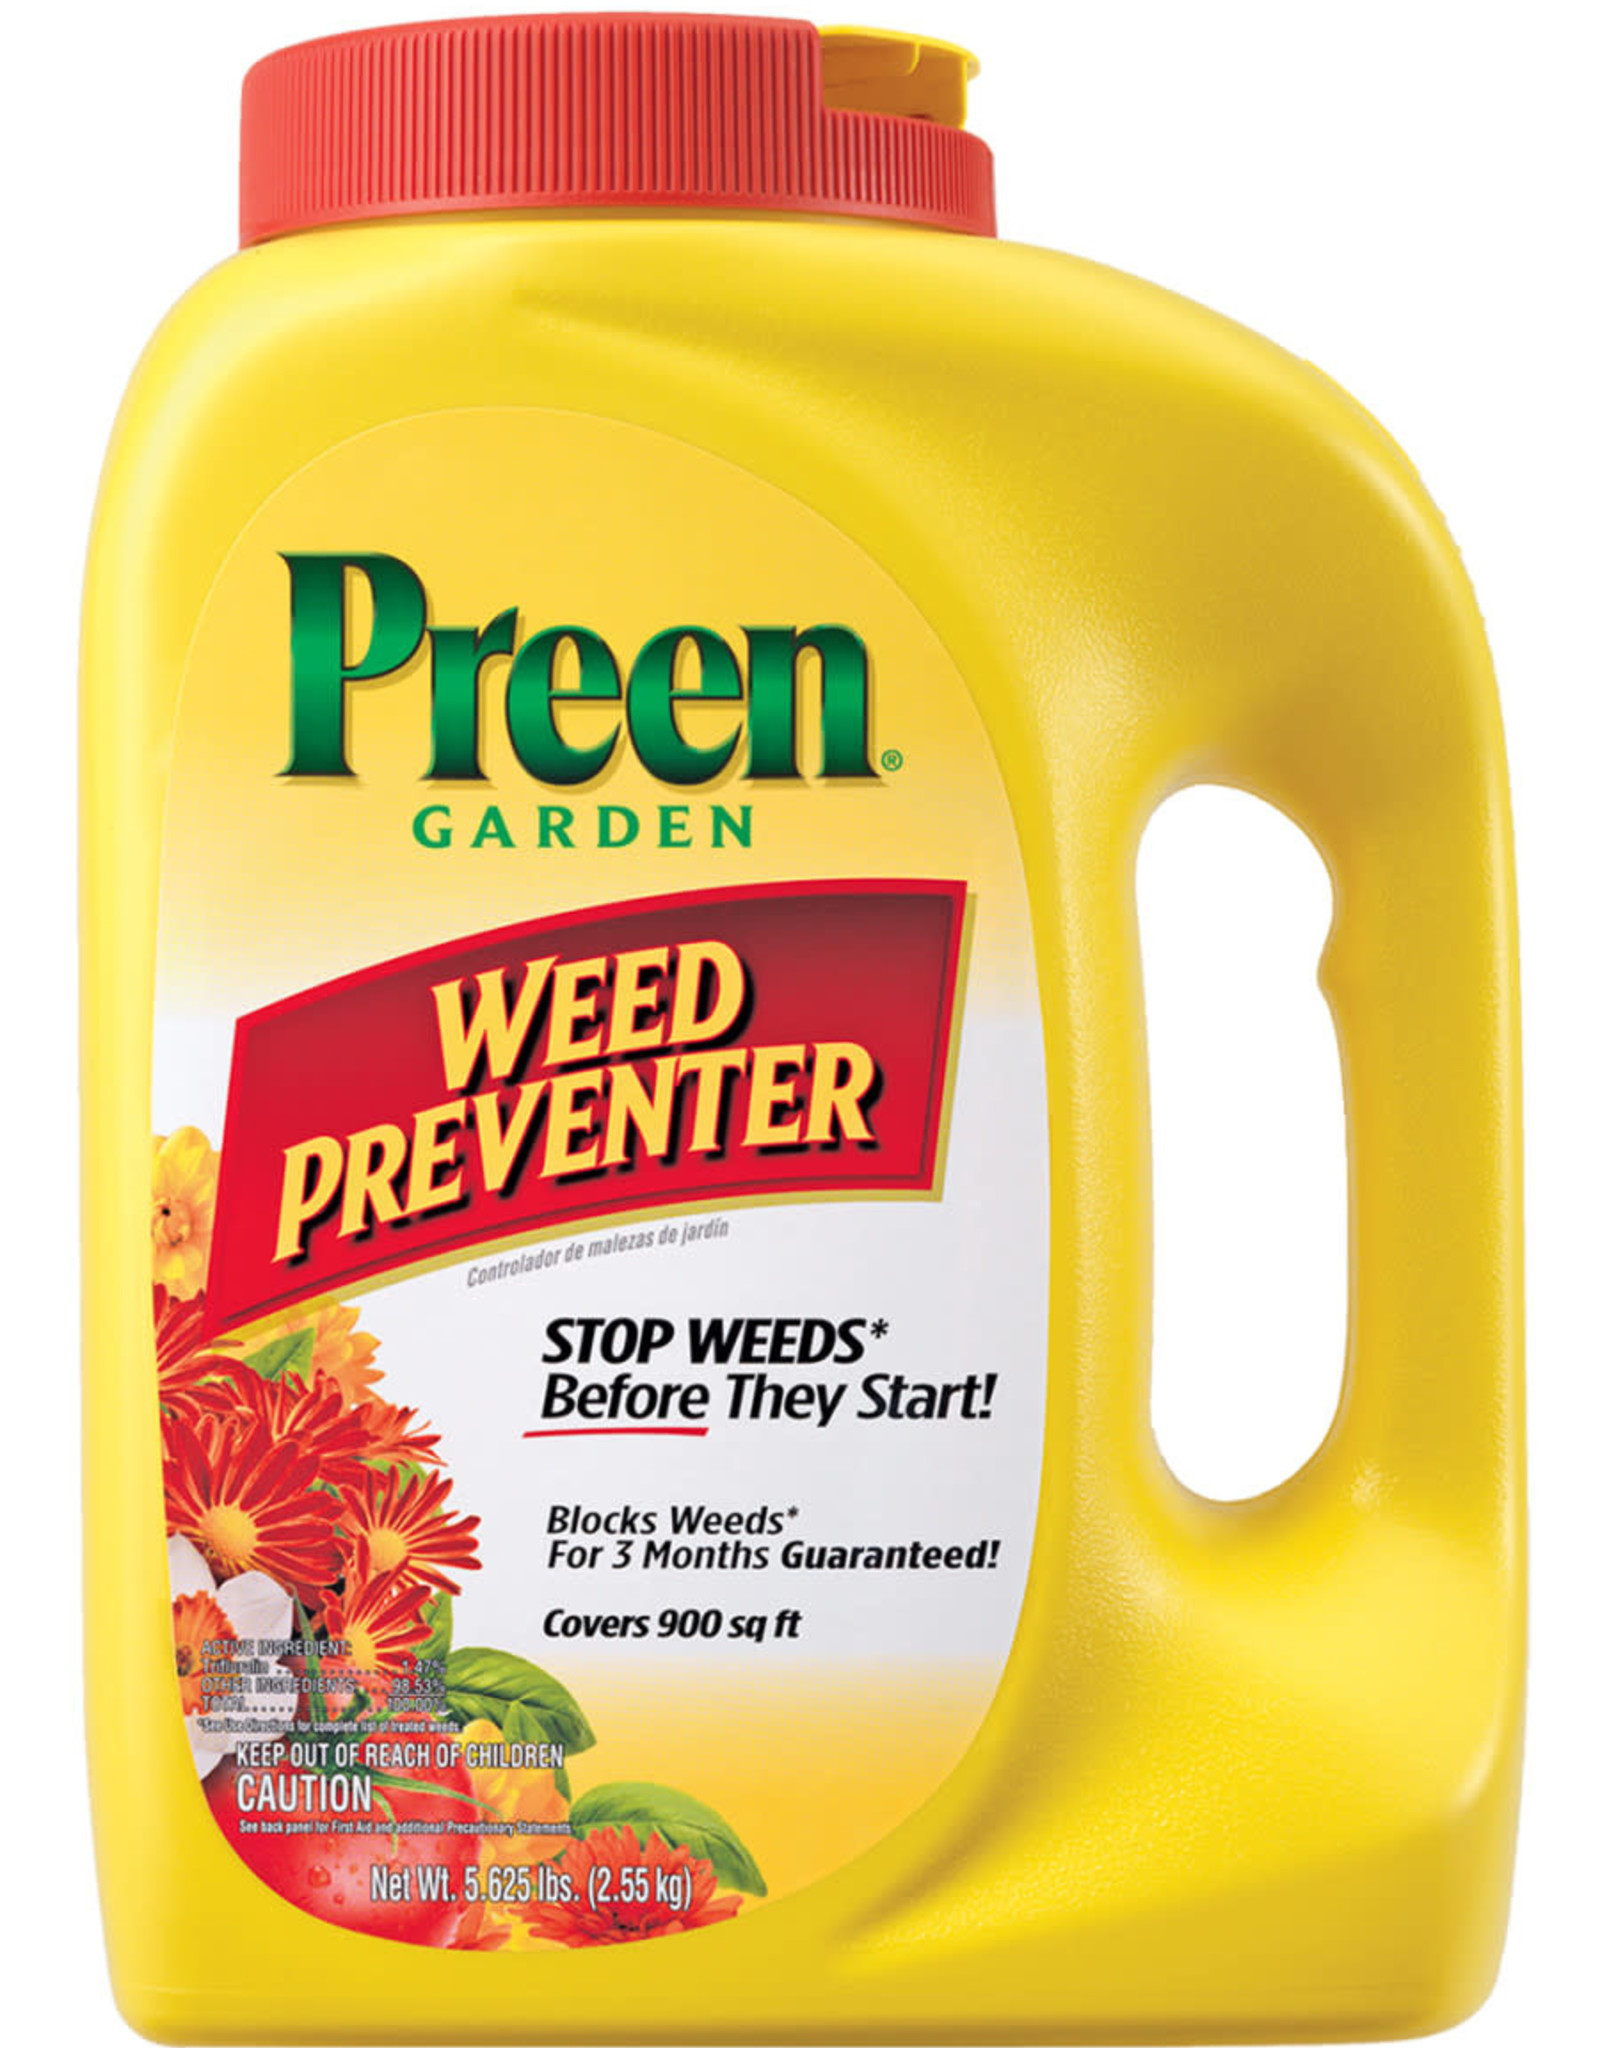 Preen Garden Weed Preventer 5.625 lb